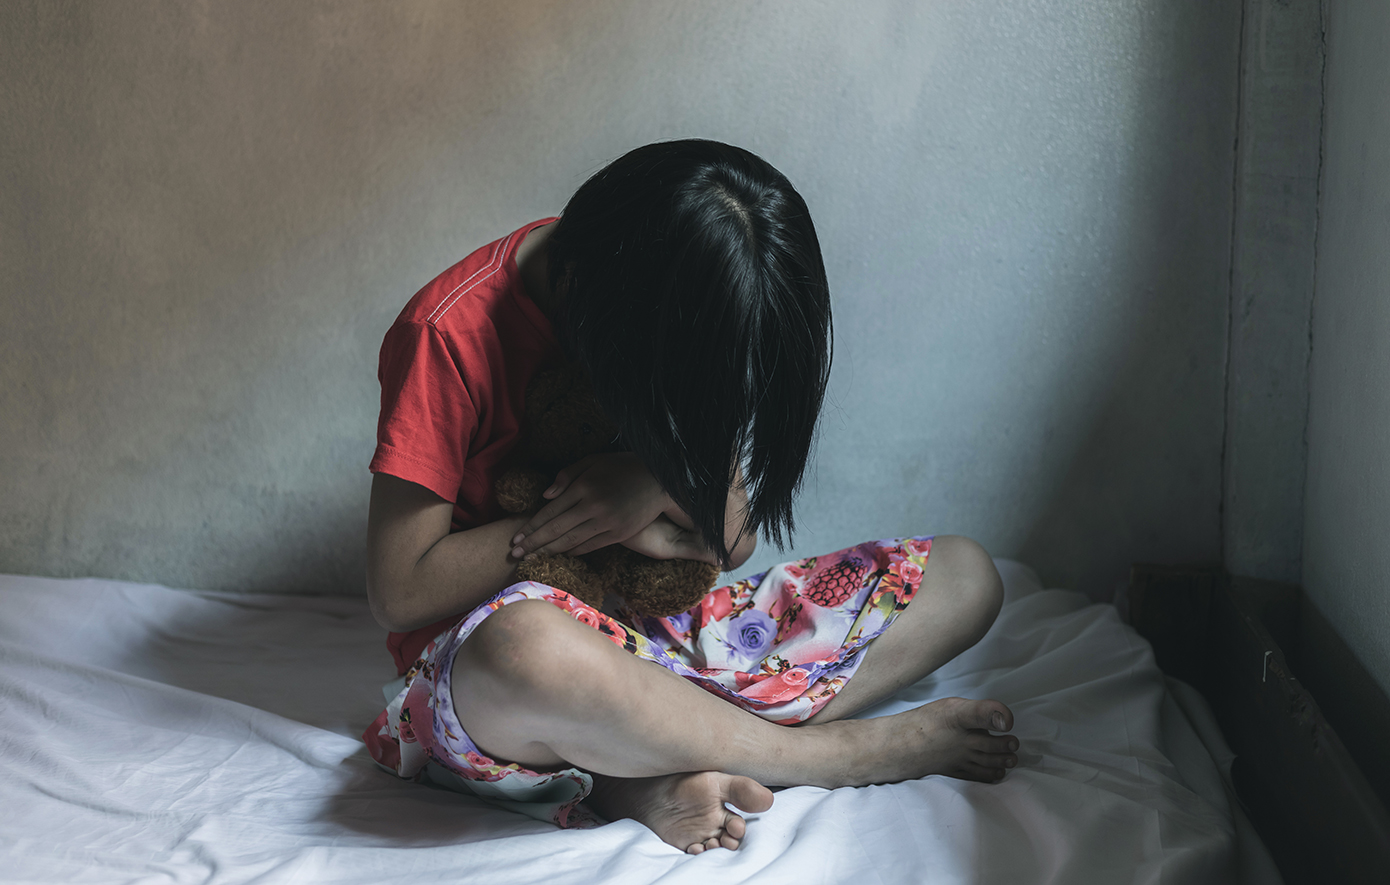 Παρενόχλησε σεξουαλικά 11χρονη και τη μαχαίρωσε για να μην το αποκαλύψει